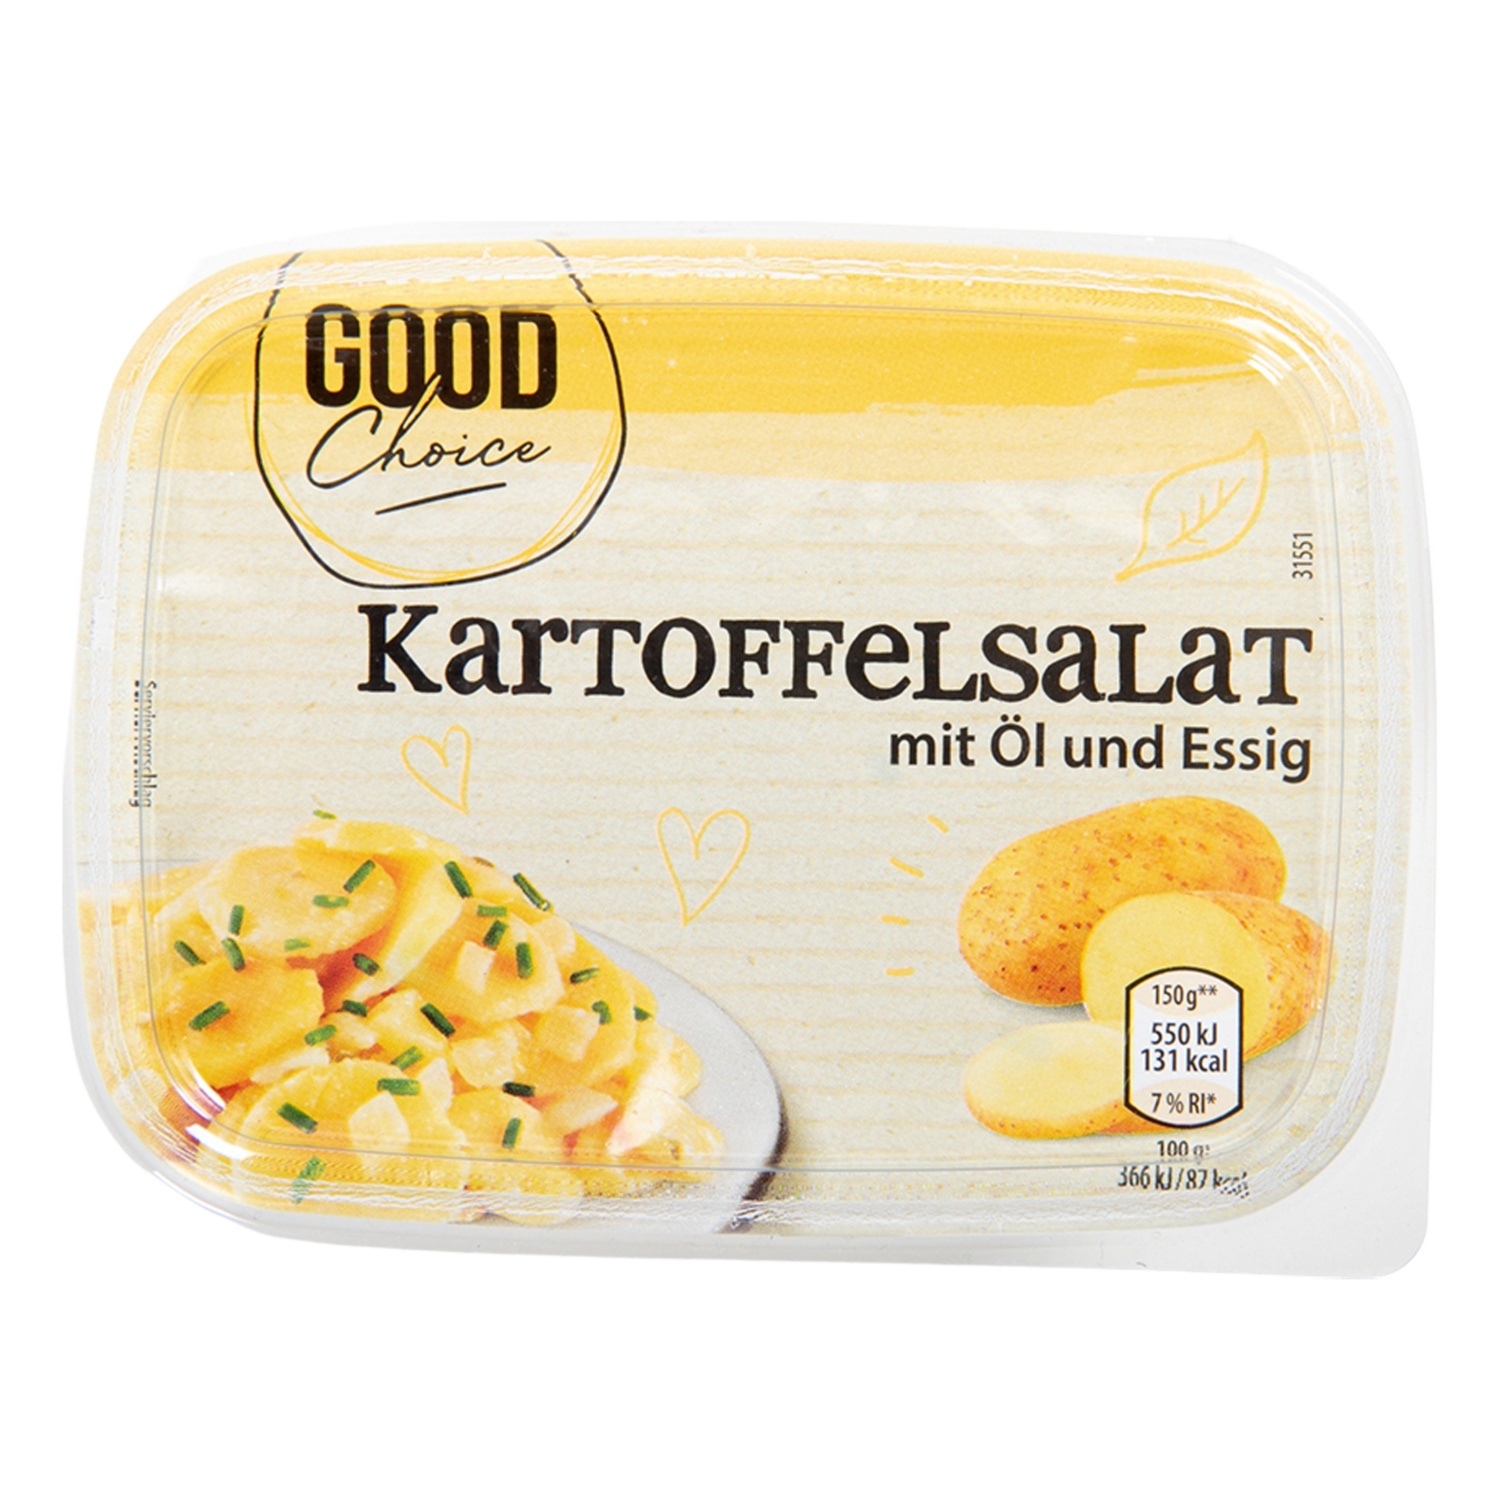 GOOD CHOICE Kleine Marinierte Salate, Kartoffel/Essig-Öl